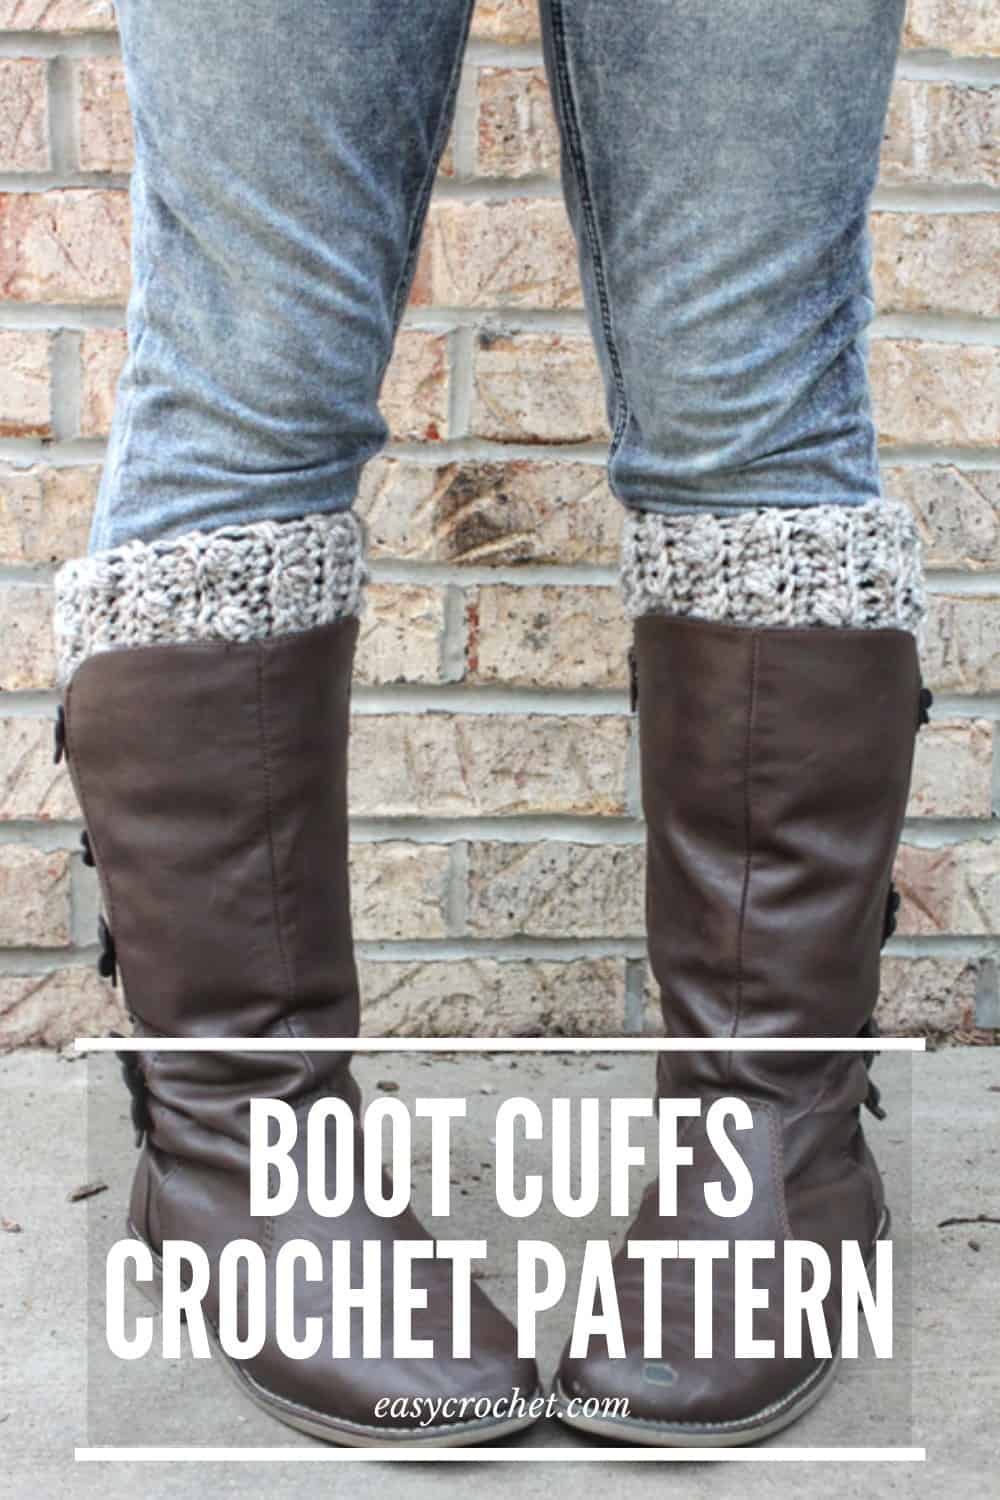 Free Crochet Boot Cuff Pattern by Easy Crochet via @easycrochetcom